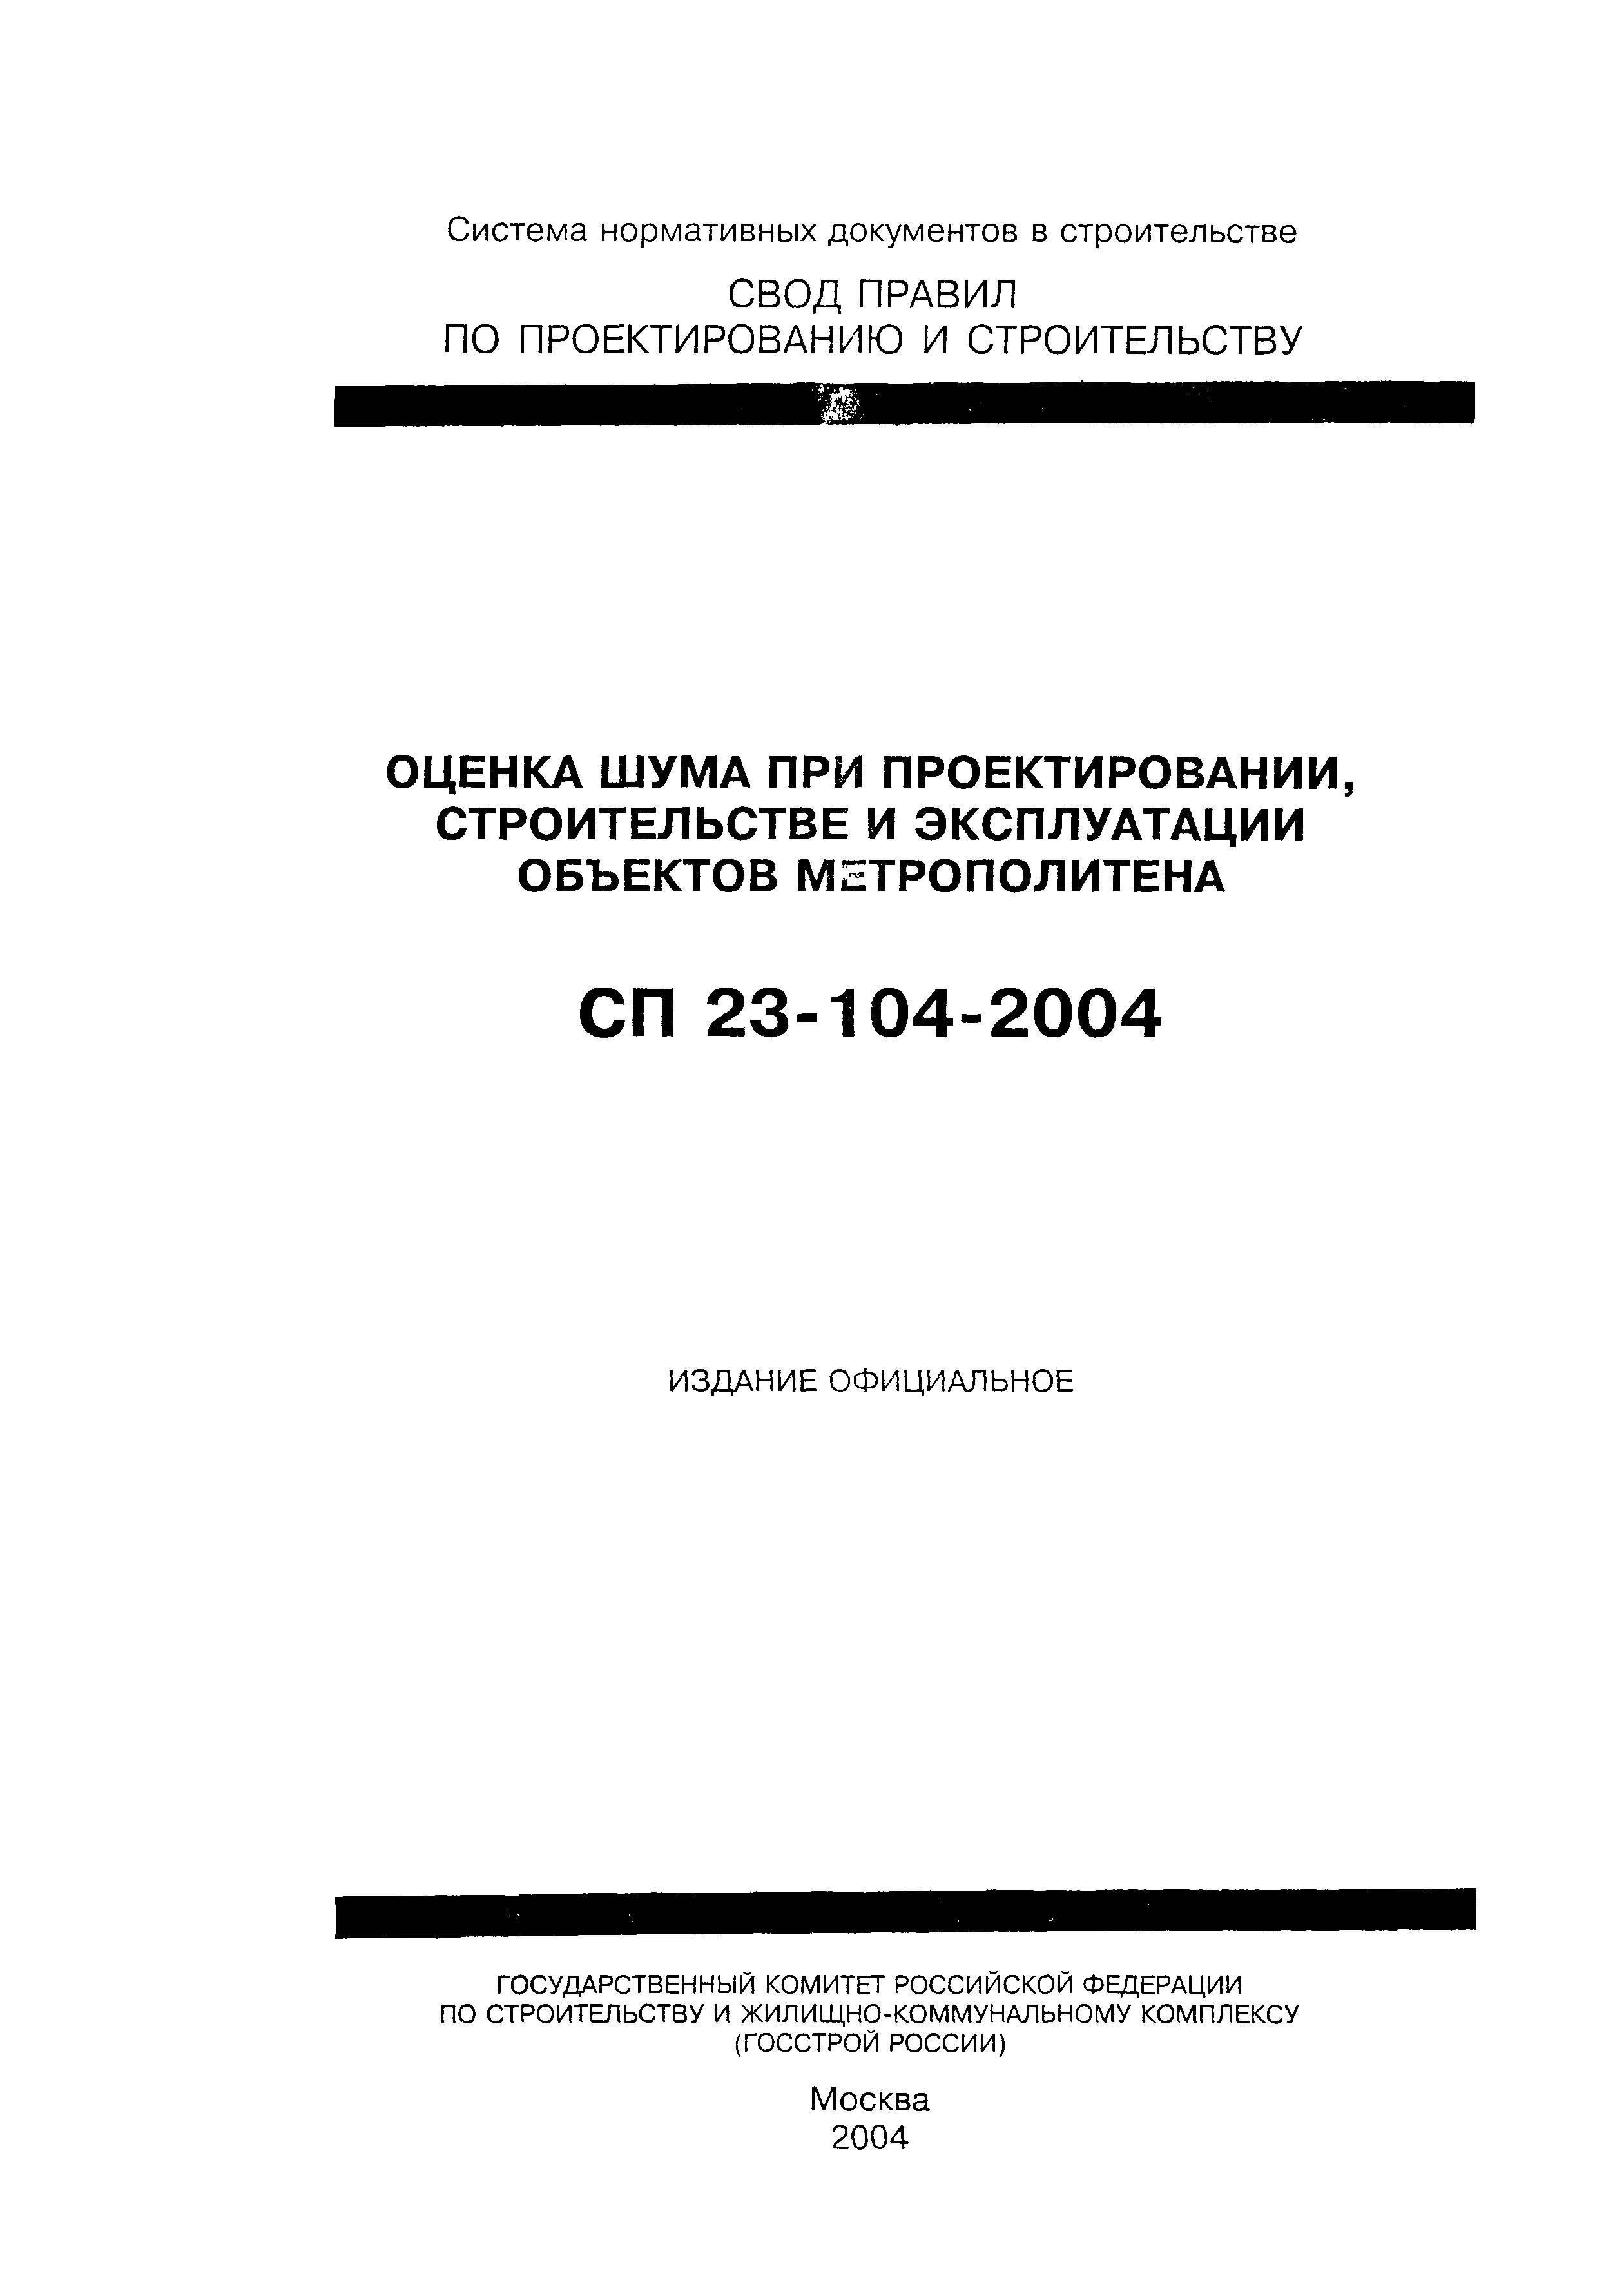 СП 23-104-2004